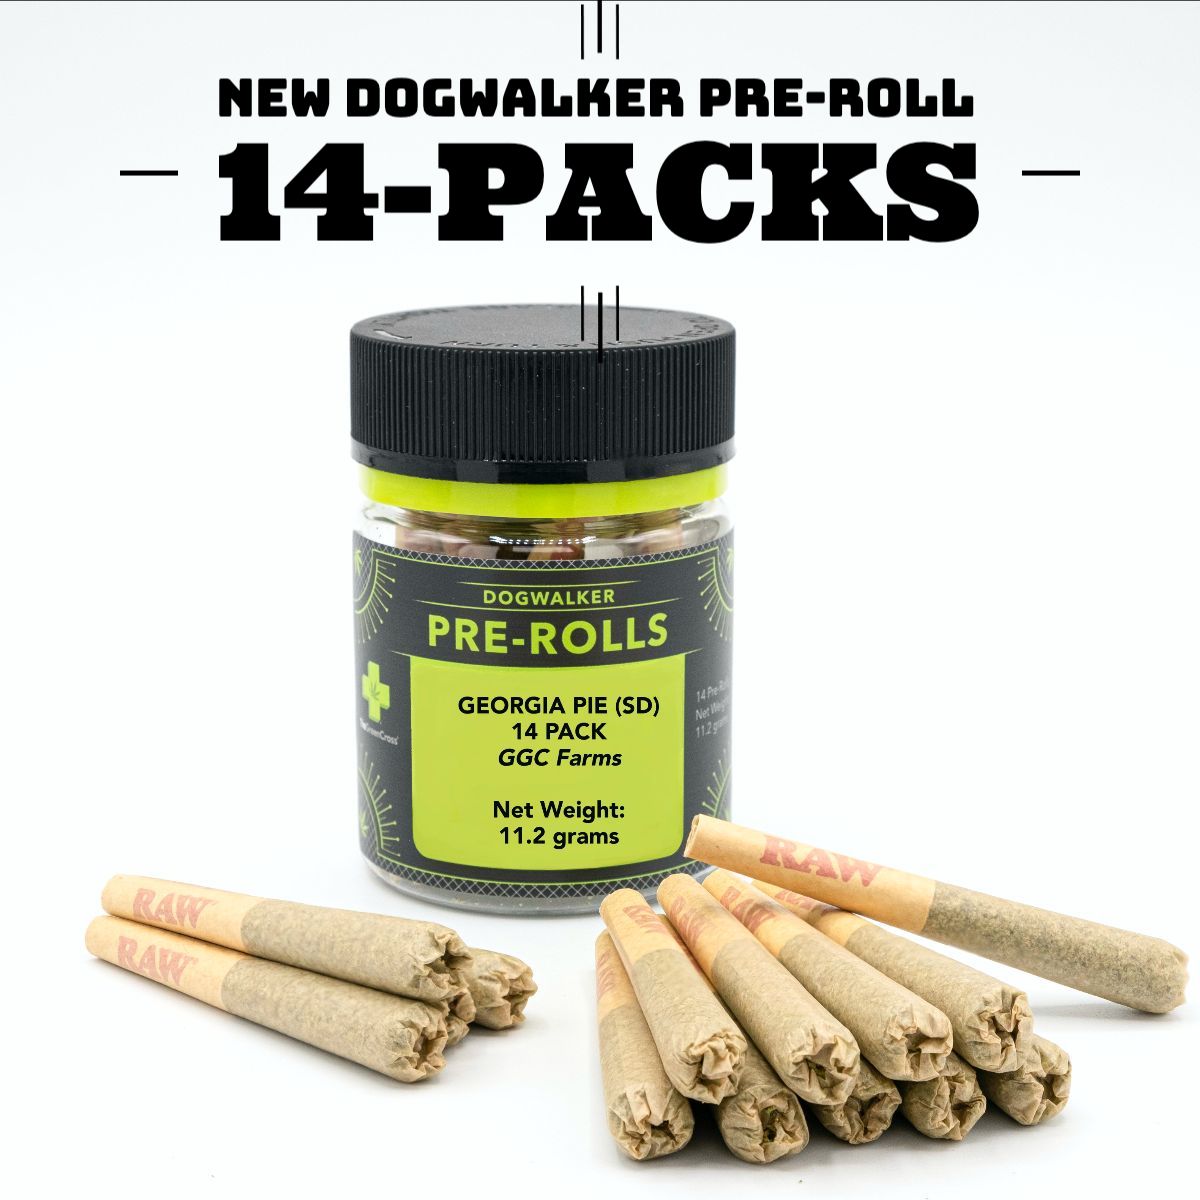 NEW Dogwalker Pre-Roll 14-Packs